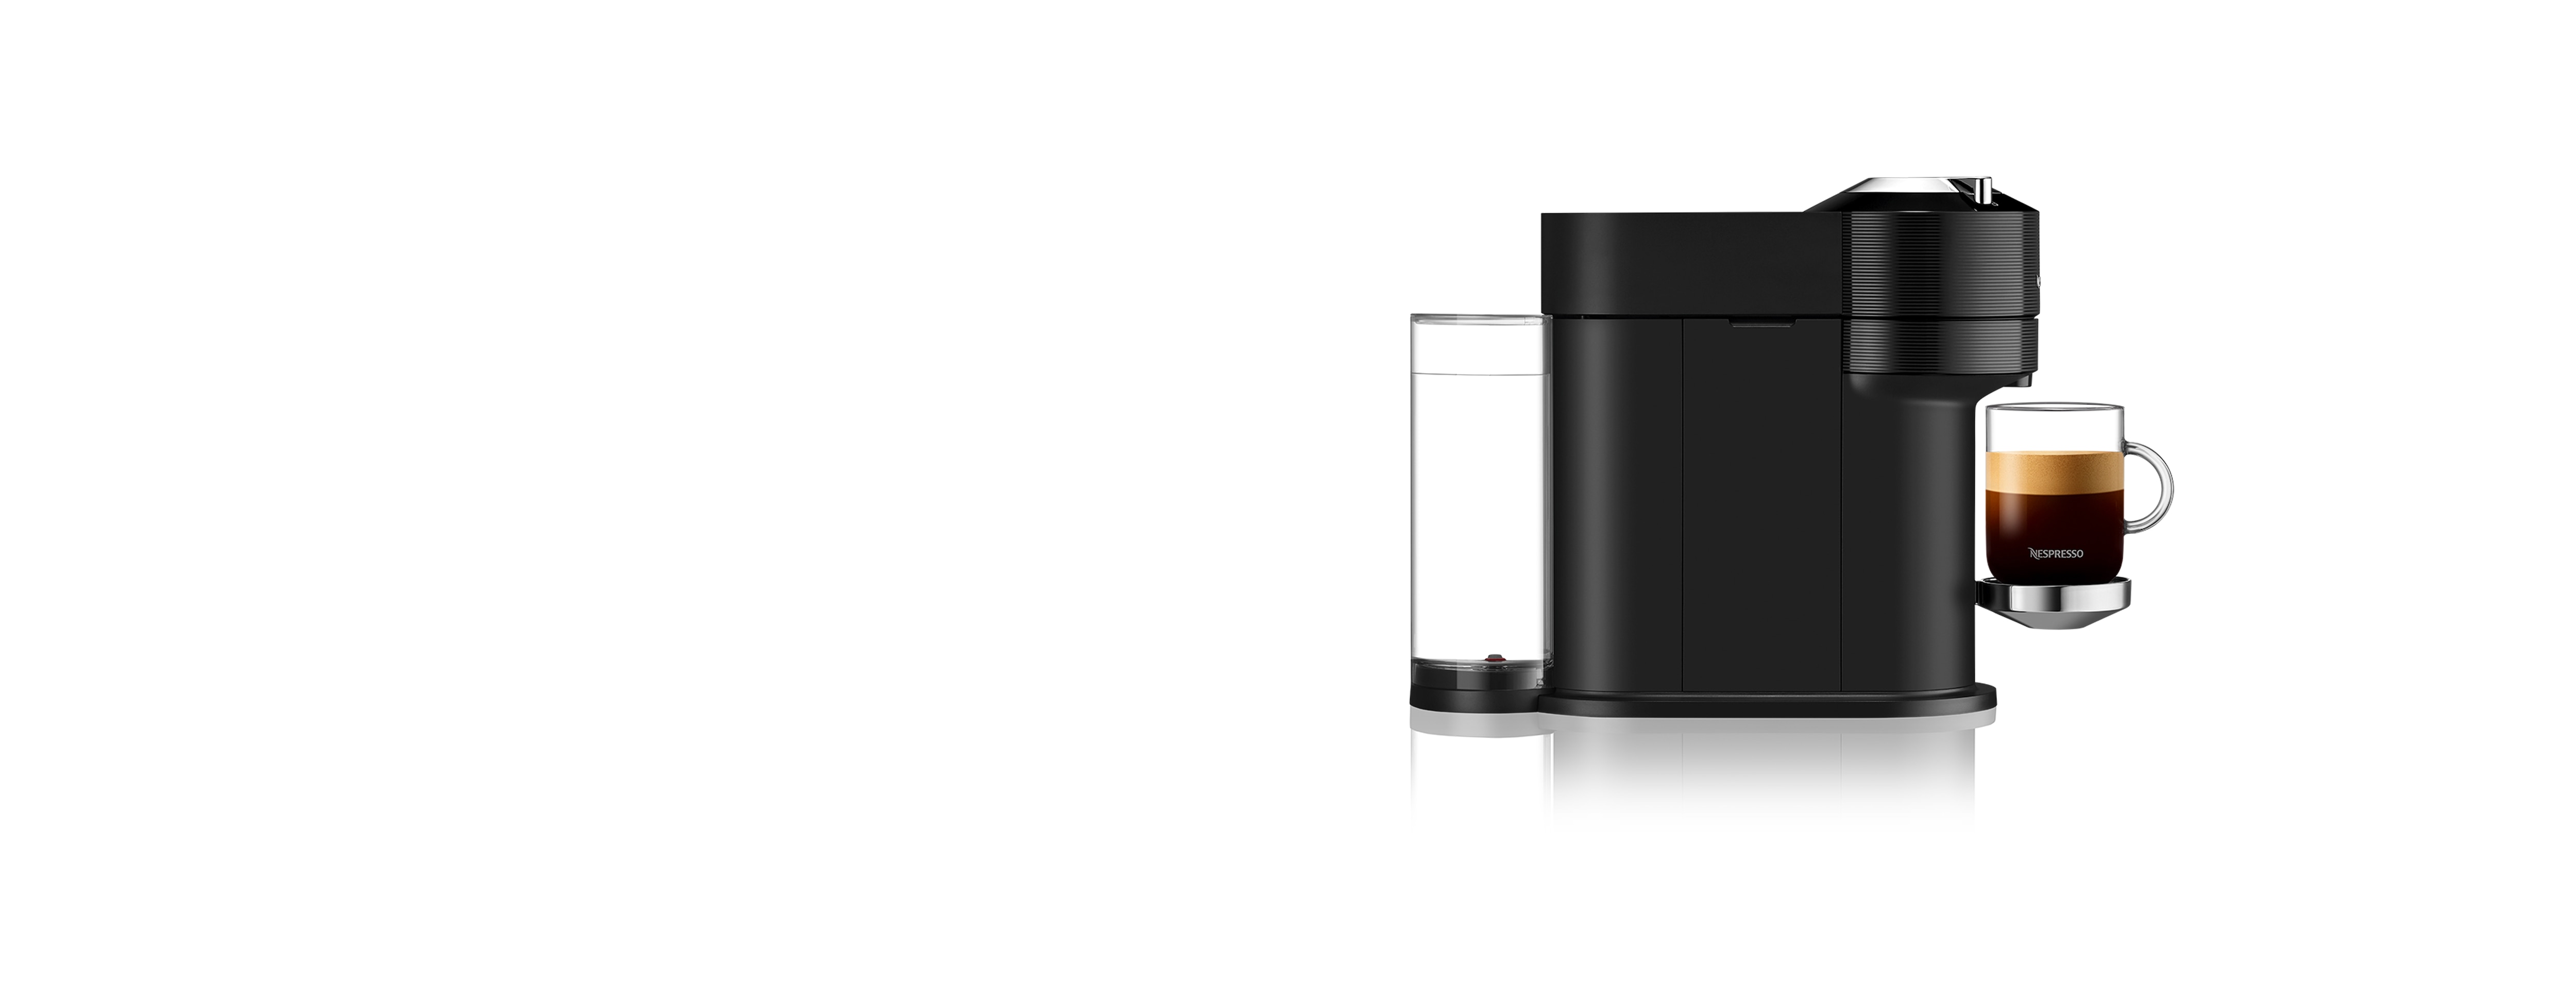 Nespresso Vertuo Next Premium Espresso Machine by DeLonghi - Black Ros –  Whole Latte Love